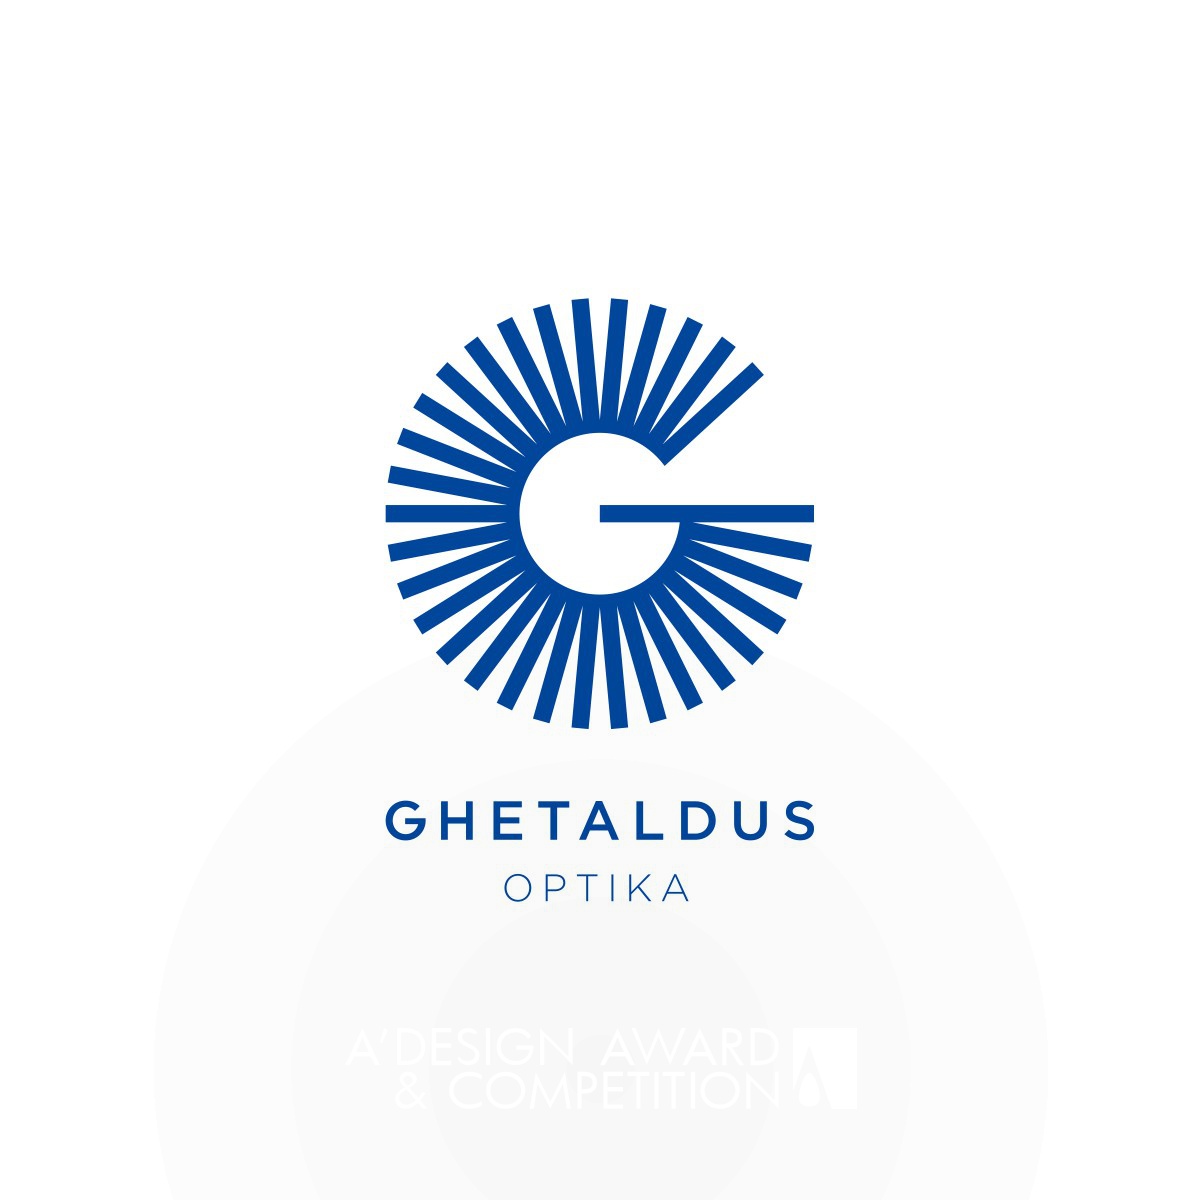 Ghetaldus Optika <b>Corporate Identity